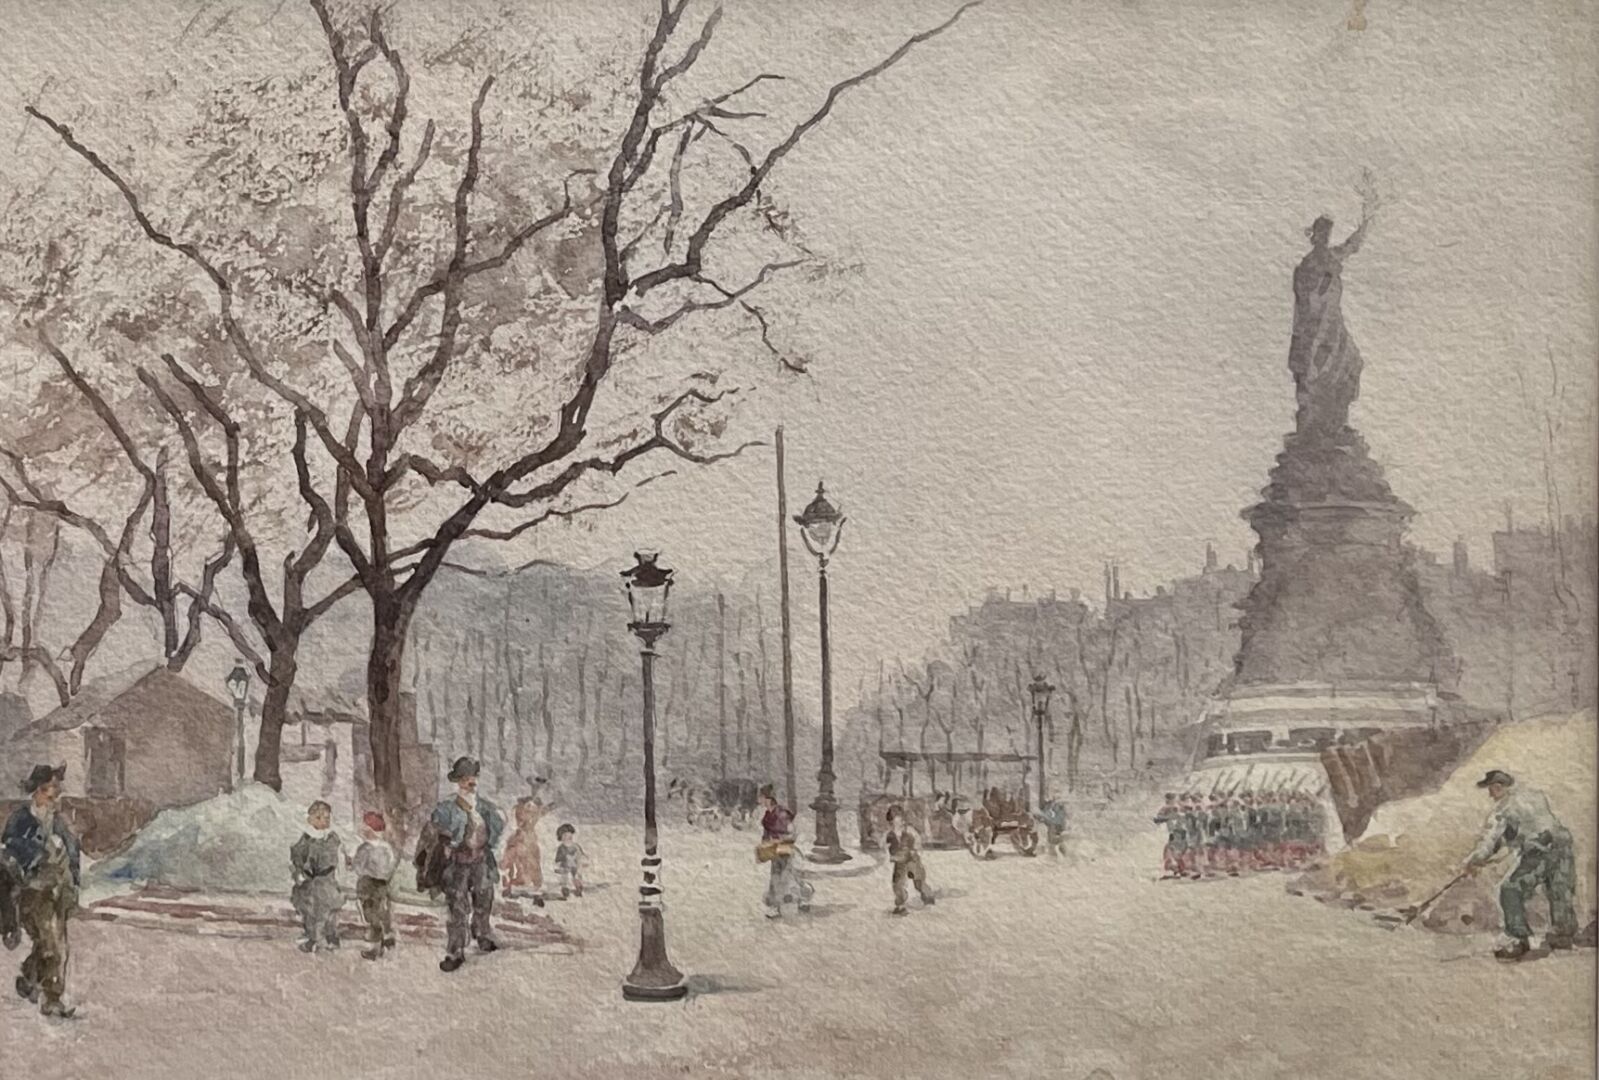 Null 约1880年的法国学校

共和国广场（Place de la République

水彩画。

24 x 34 cm